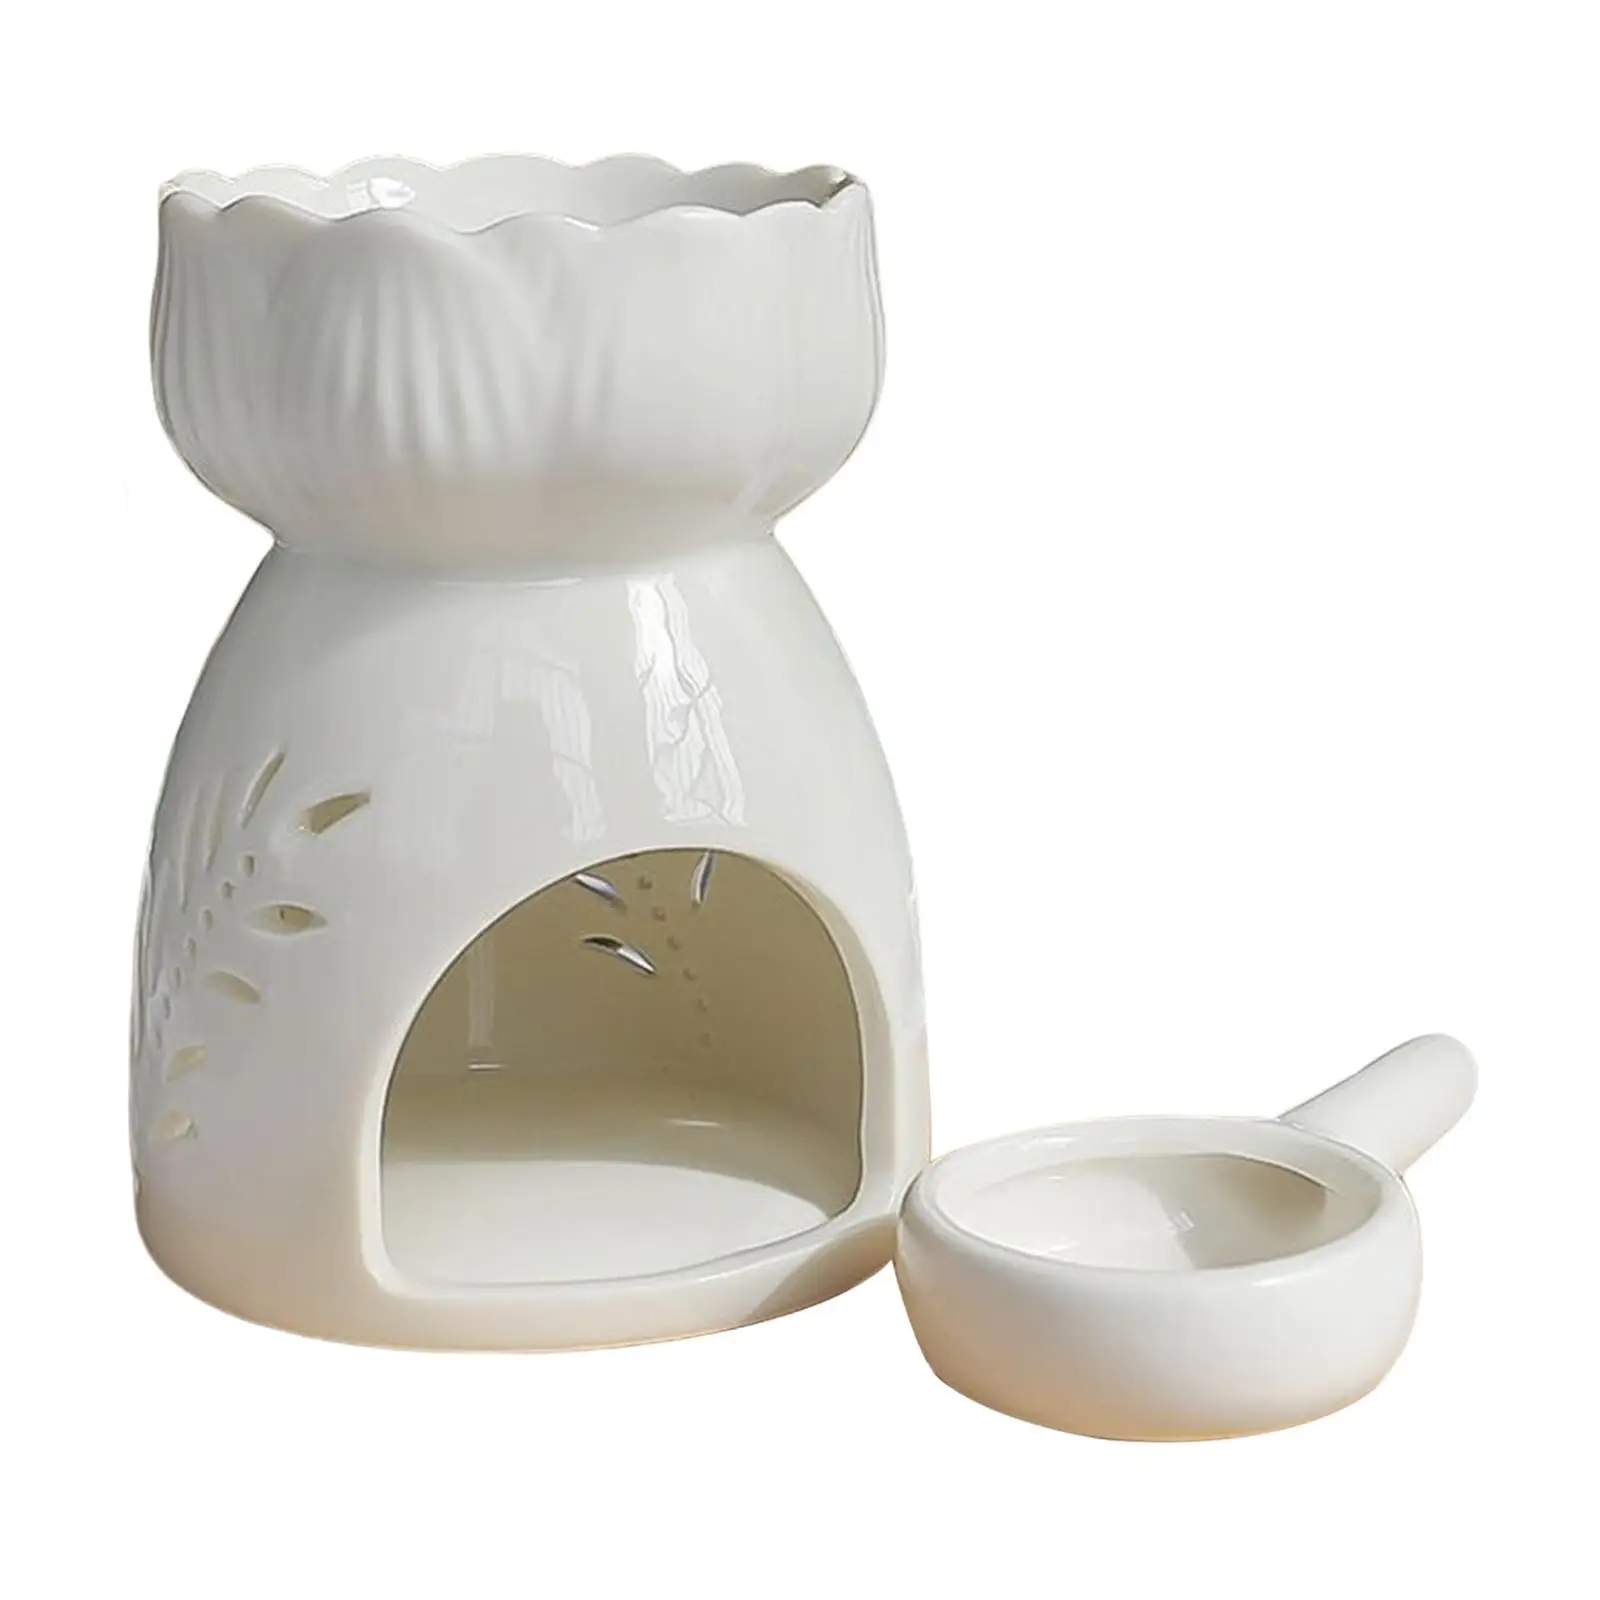 Portable Ceramic Tealight Holder Elegant Burner Essential Oil Burner Lamp for Wedding Indoor Home Decoration